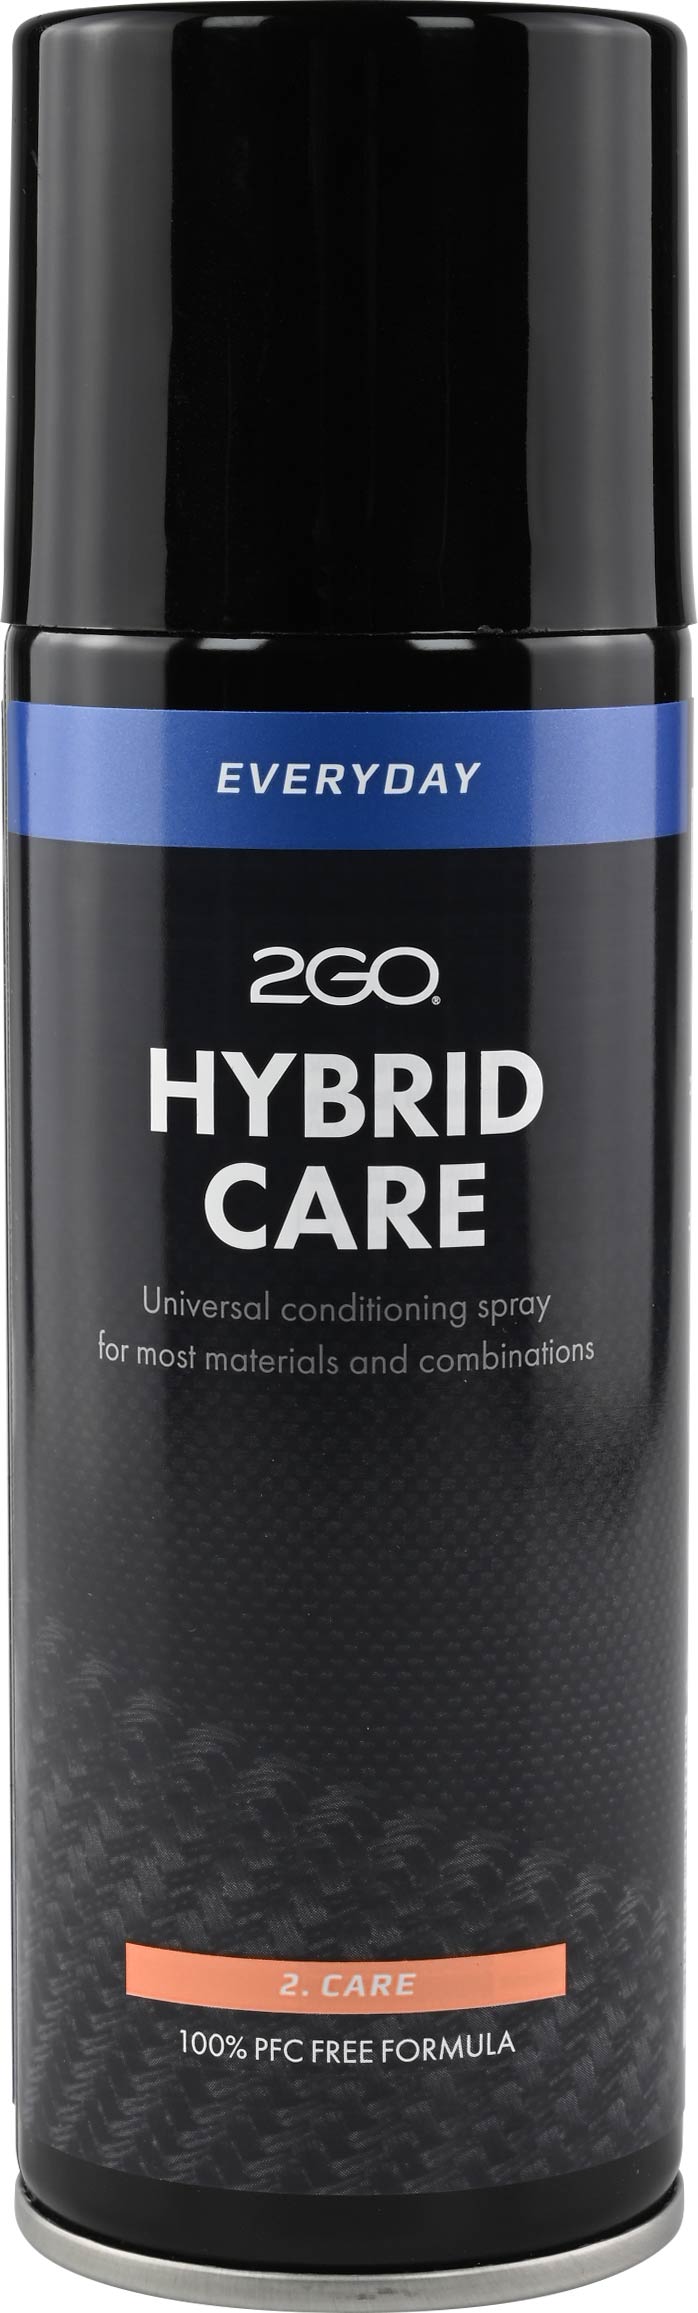 2GO - Hybrid Care